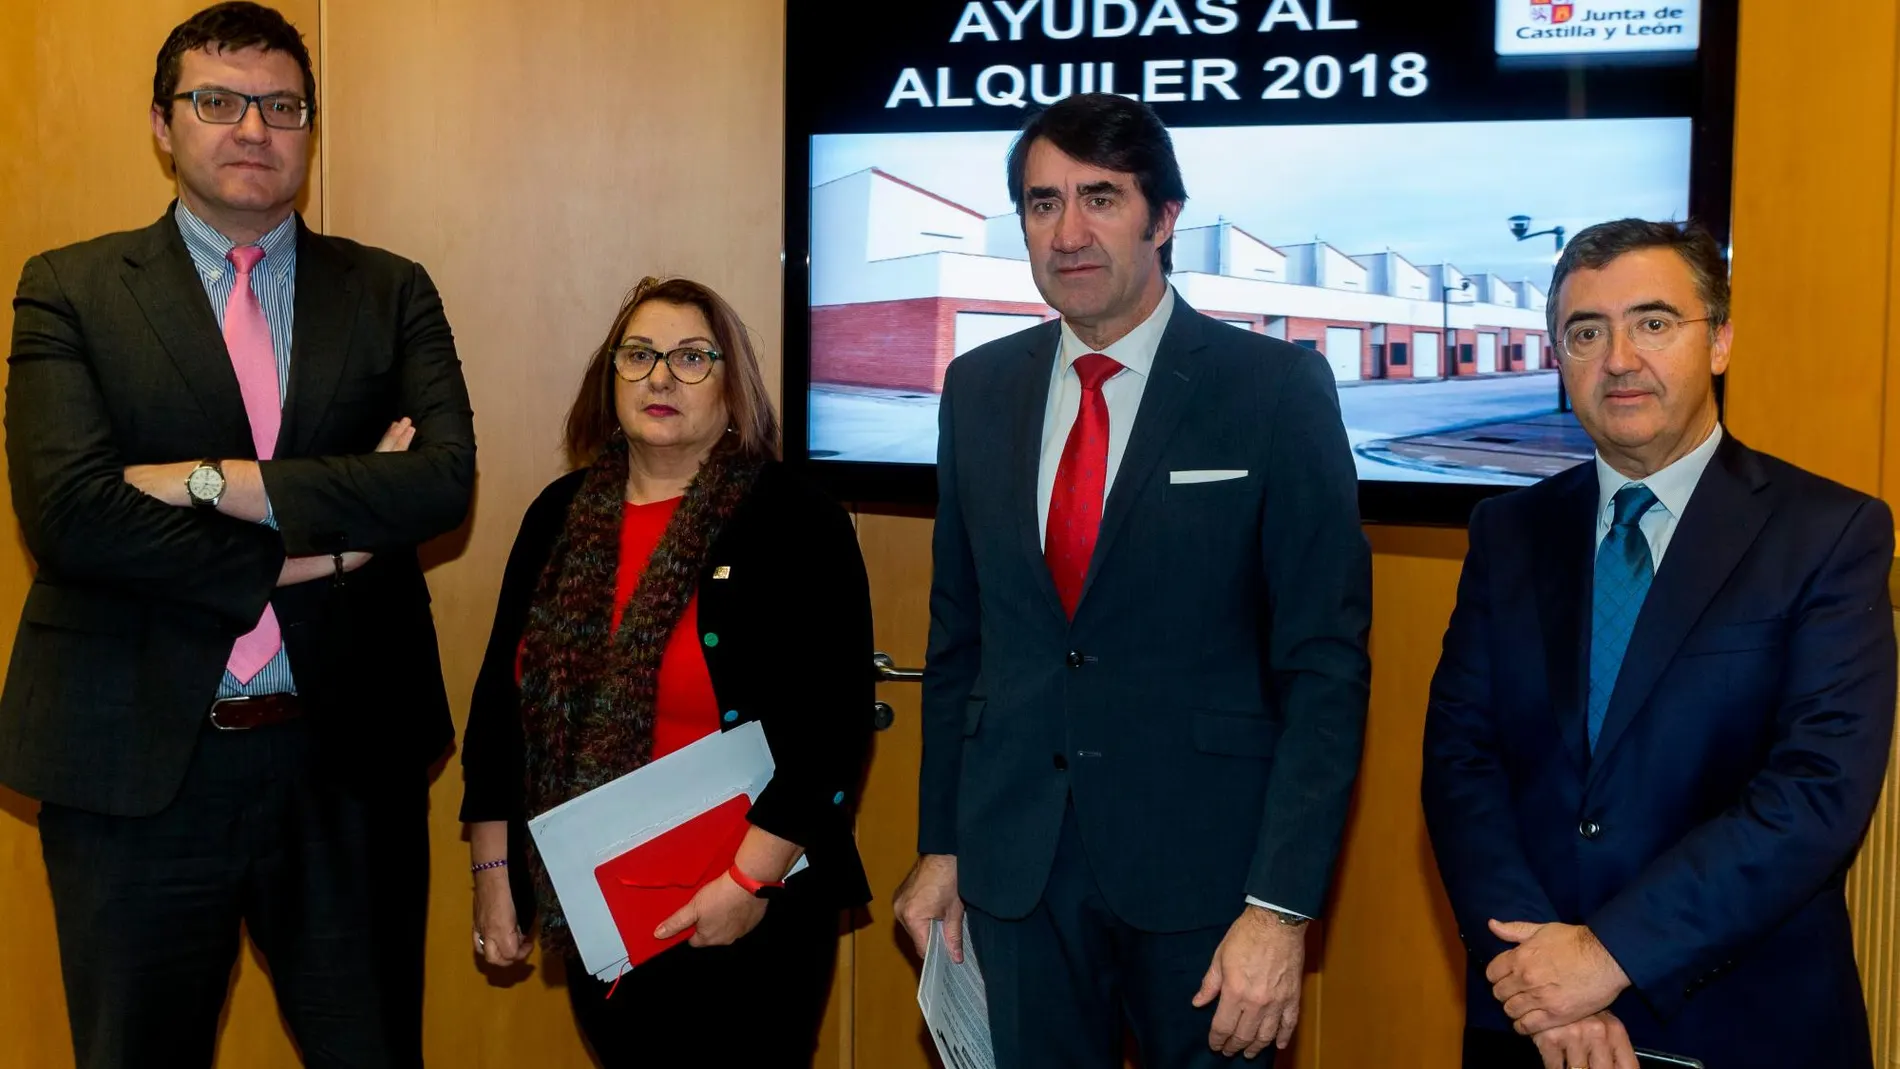 El consejero de Fomento y Medio Ambiente, Juan Carlos Suárez-Quiñones, presenta la resolución de las ayudas al alquiler